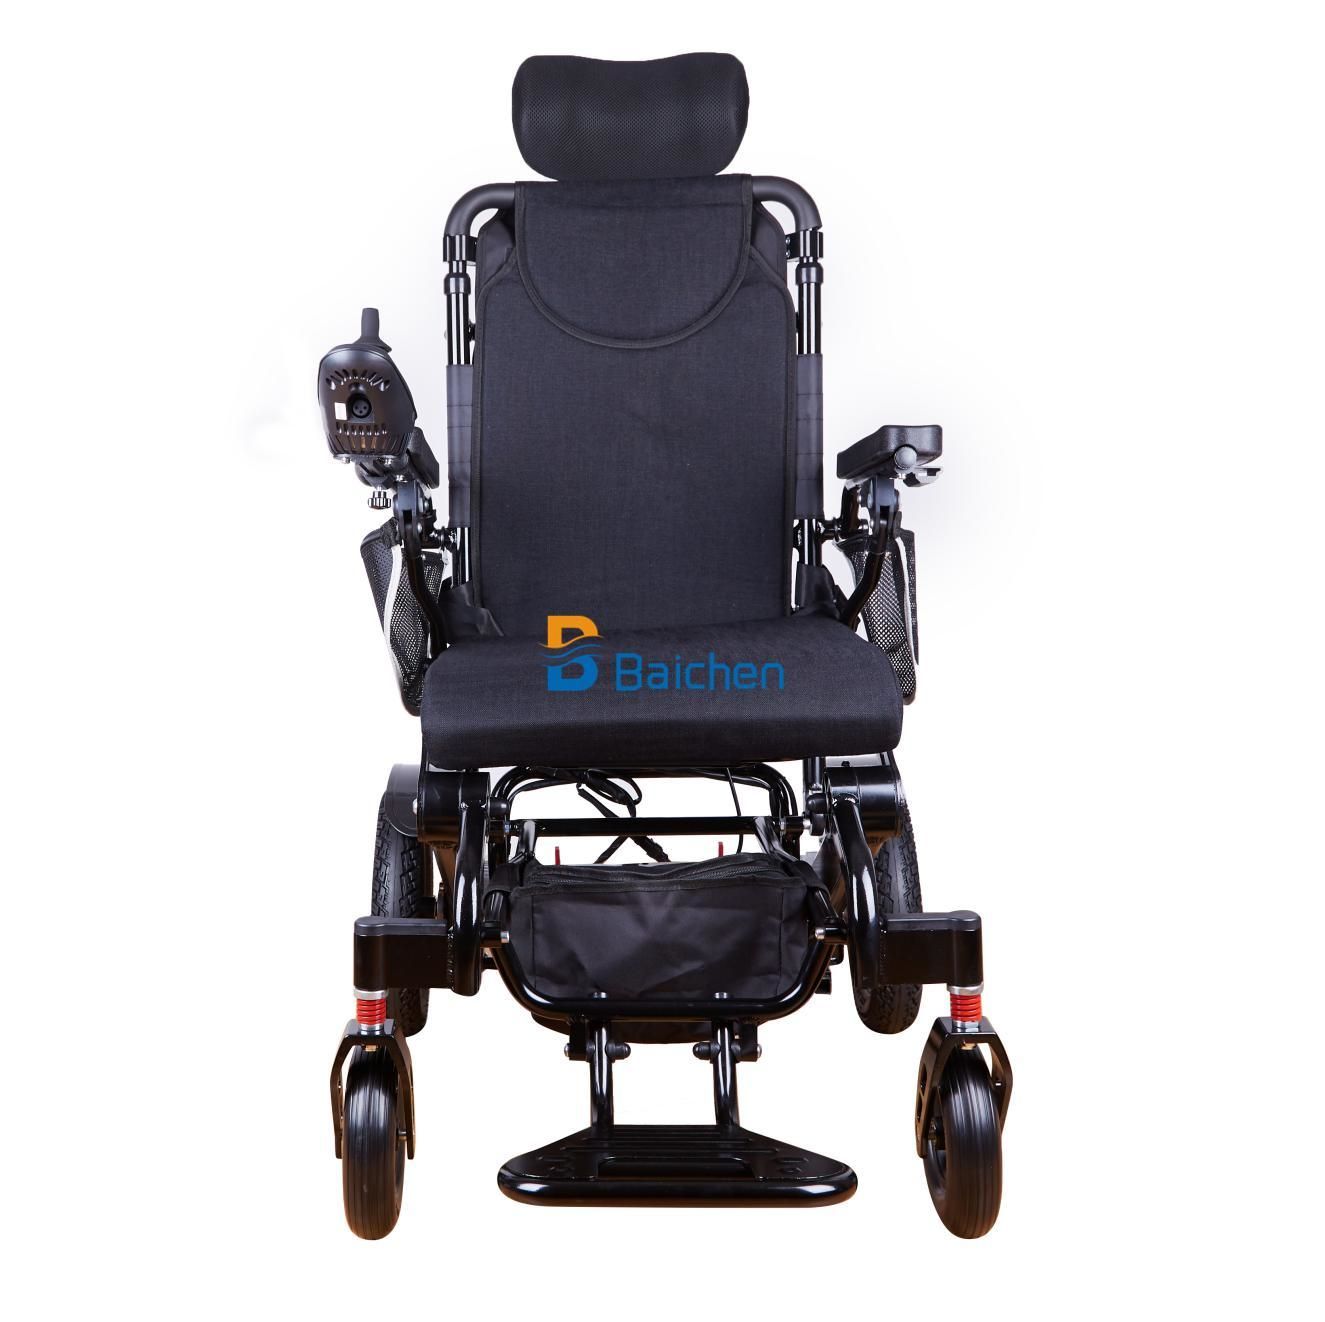 Mejores proveedores de sillas de ruedas eléctricas: Instalaciones de accesibilidad del aeropuerto.